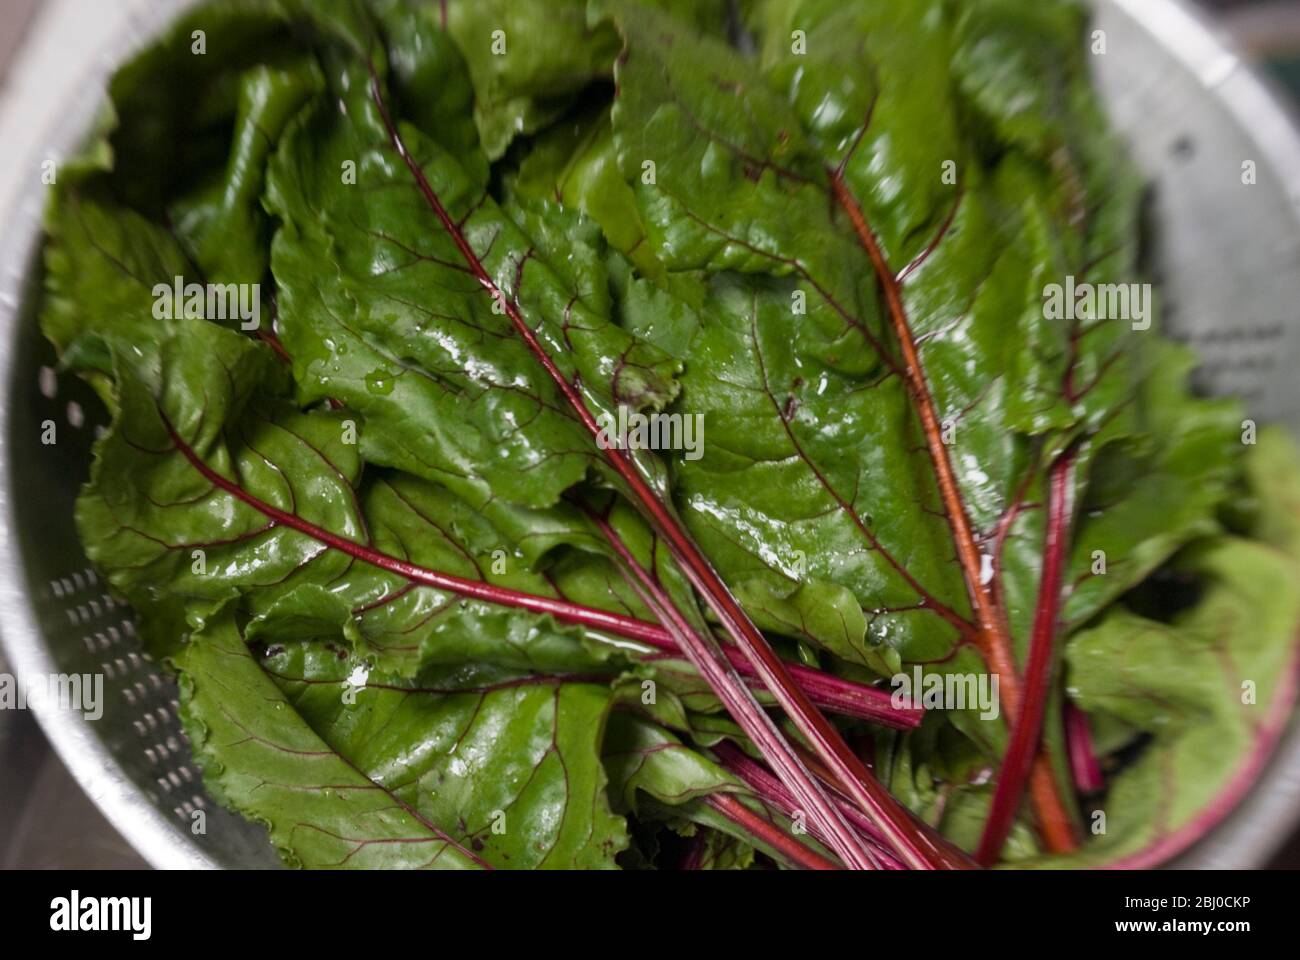 Die Blätter aus frisch gegrabener Rote Bete, die als leckeres Blattgemüse verwendet werden - Stockfoto